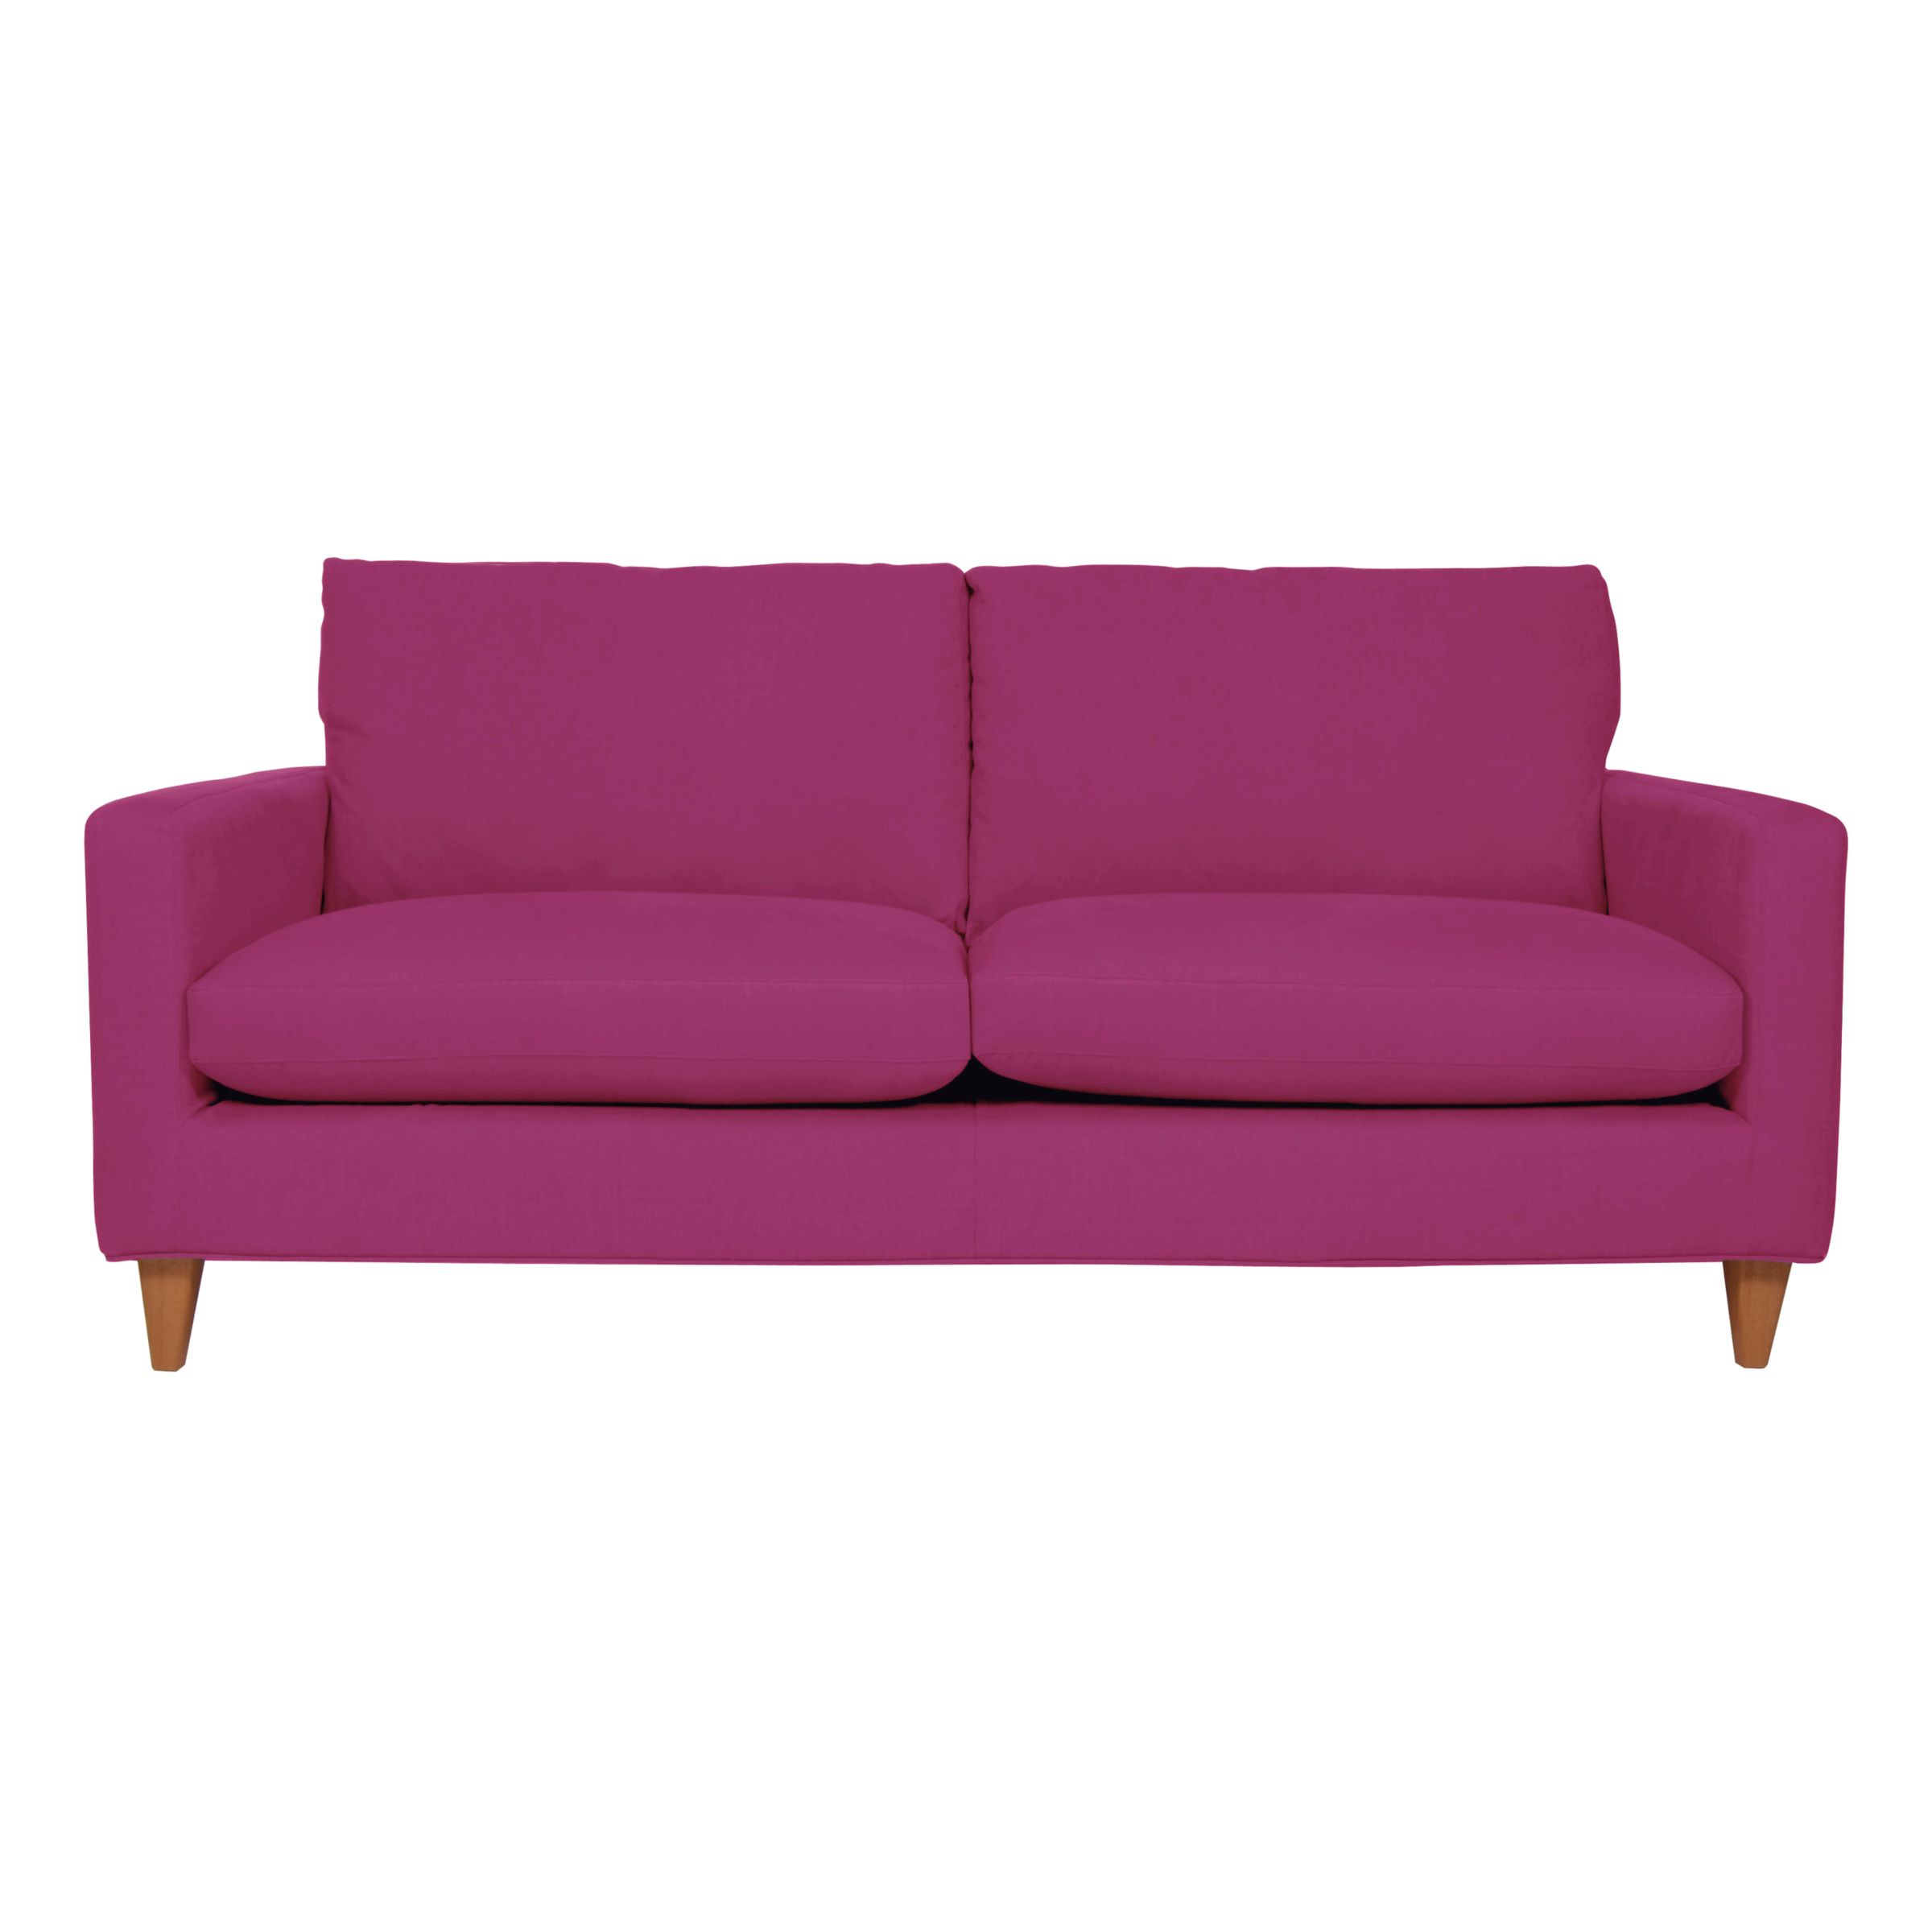 John Lewis Bailey Large Sofa, Oban Hot Pink, width 194cm